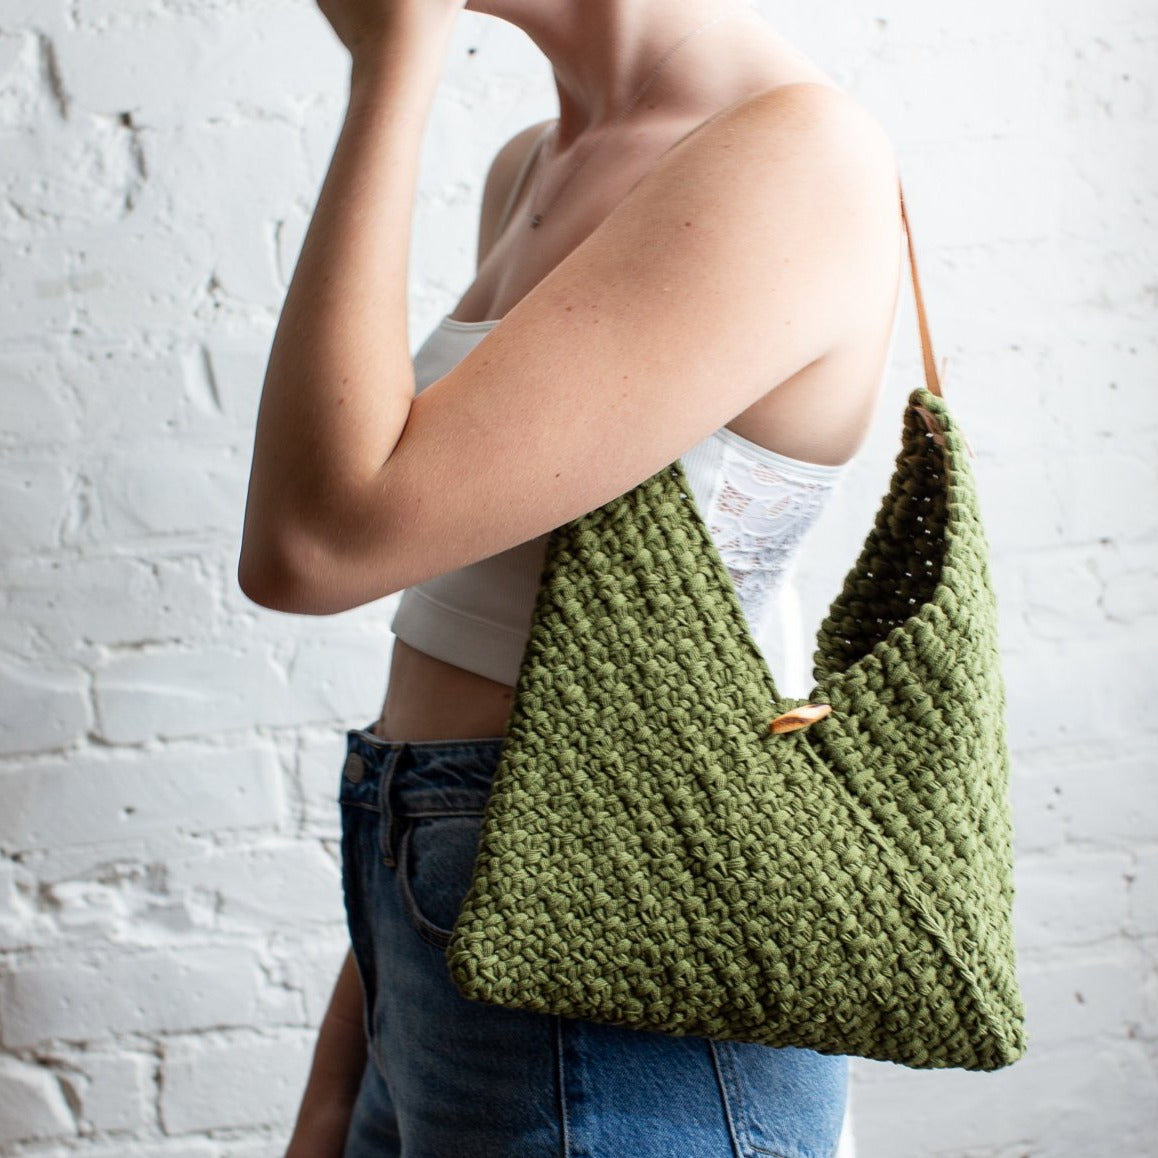 Mini Trellis Drawstring Bag Knit Kit